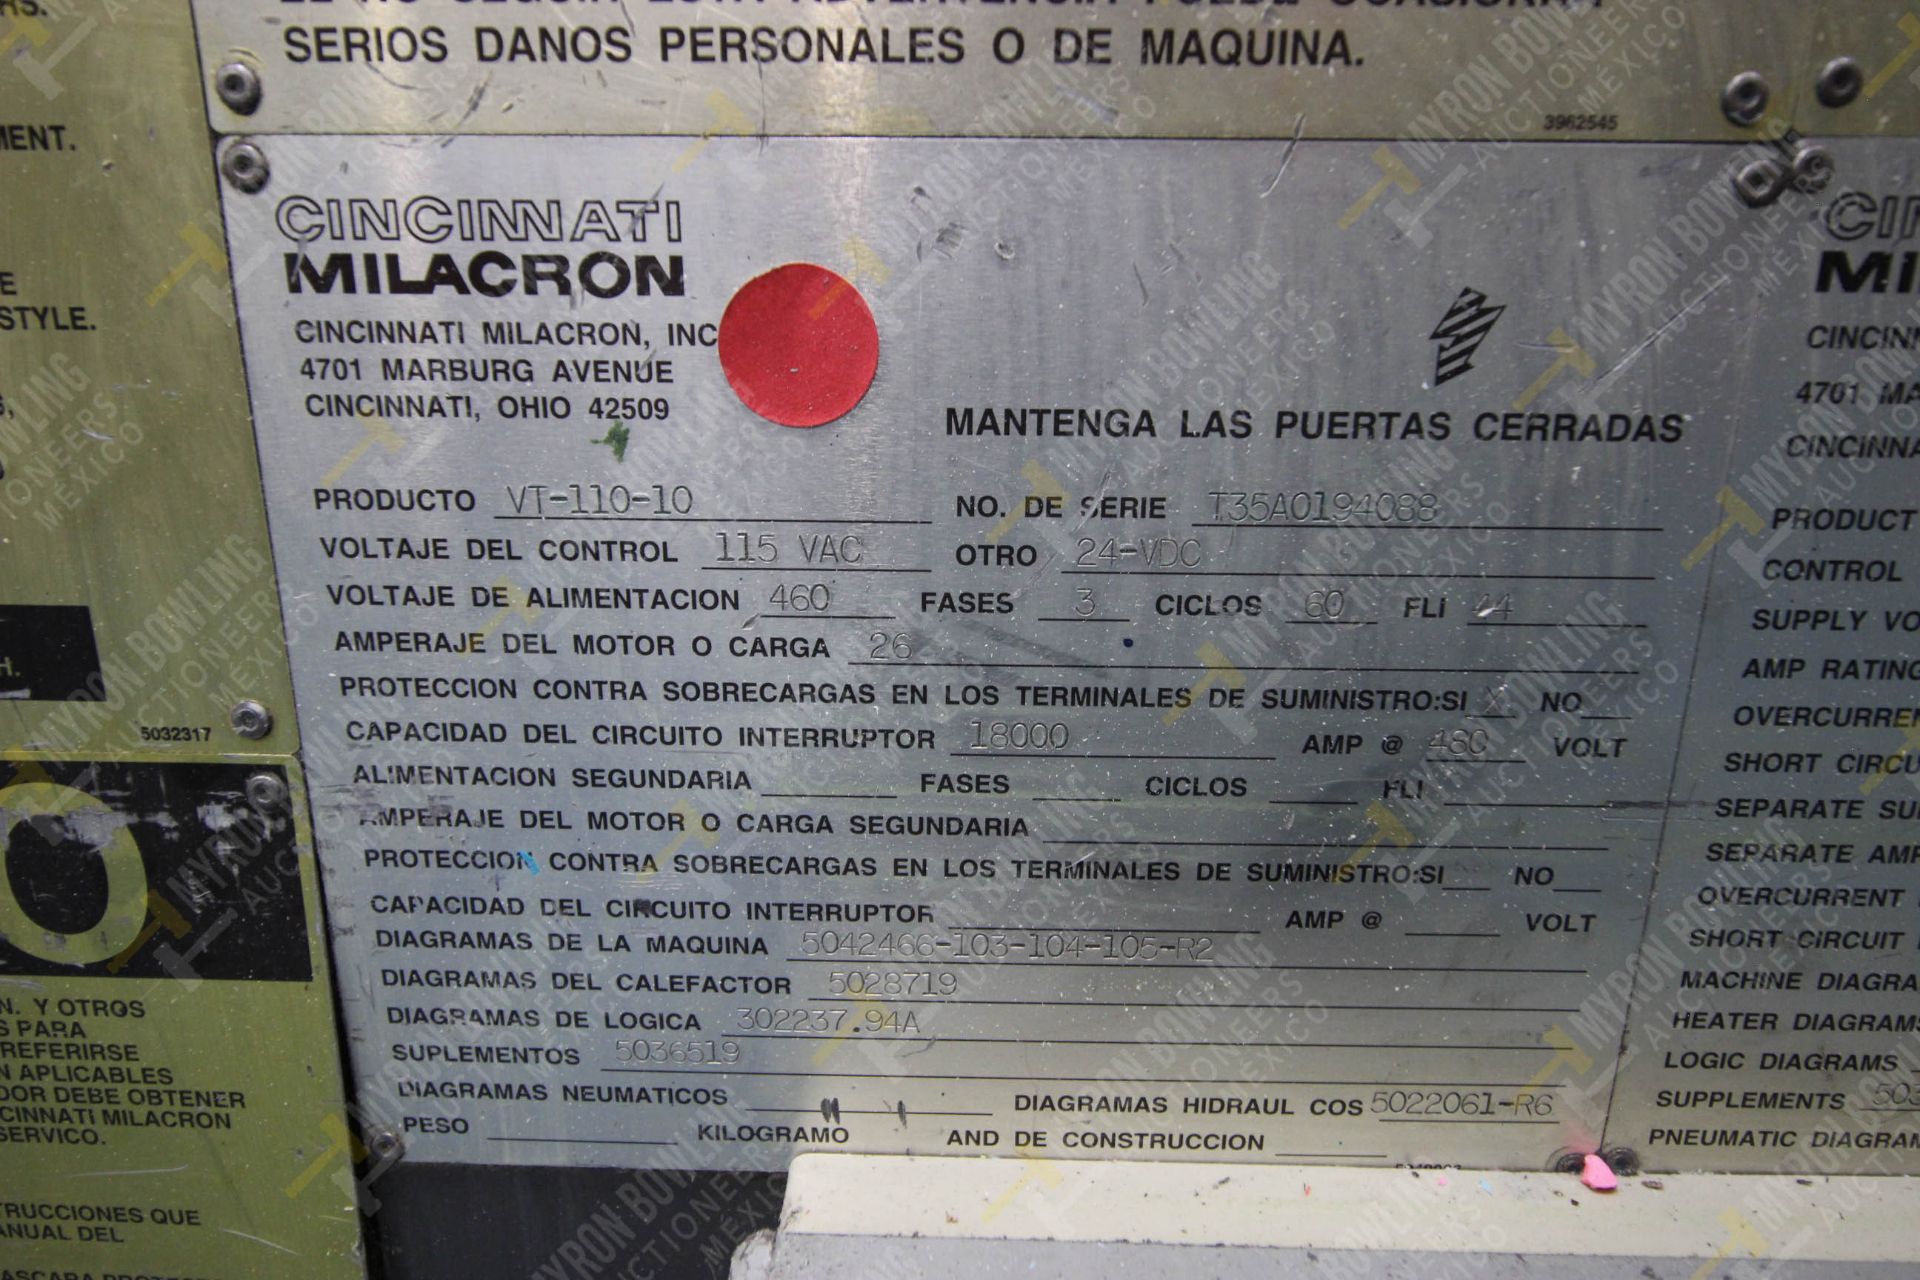 INYECTORA DE PLASTICO, MARCA CINCINNATI MILACRON, NO. SERIE T35A0194088, NO. ACTIVO D-05, AÑO 1994, - Image 15 of 17